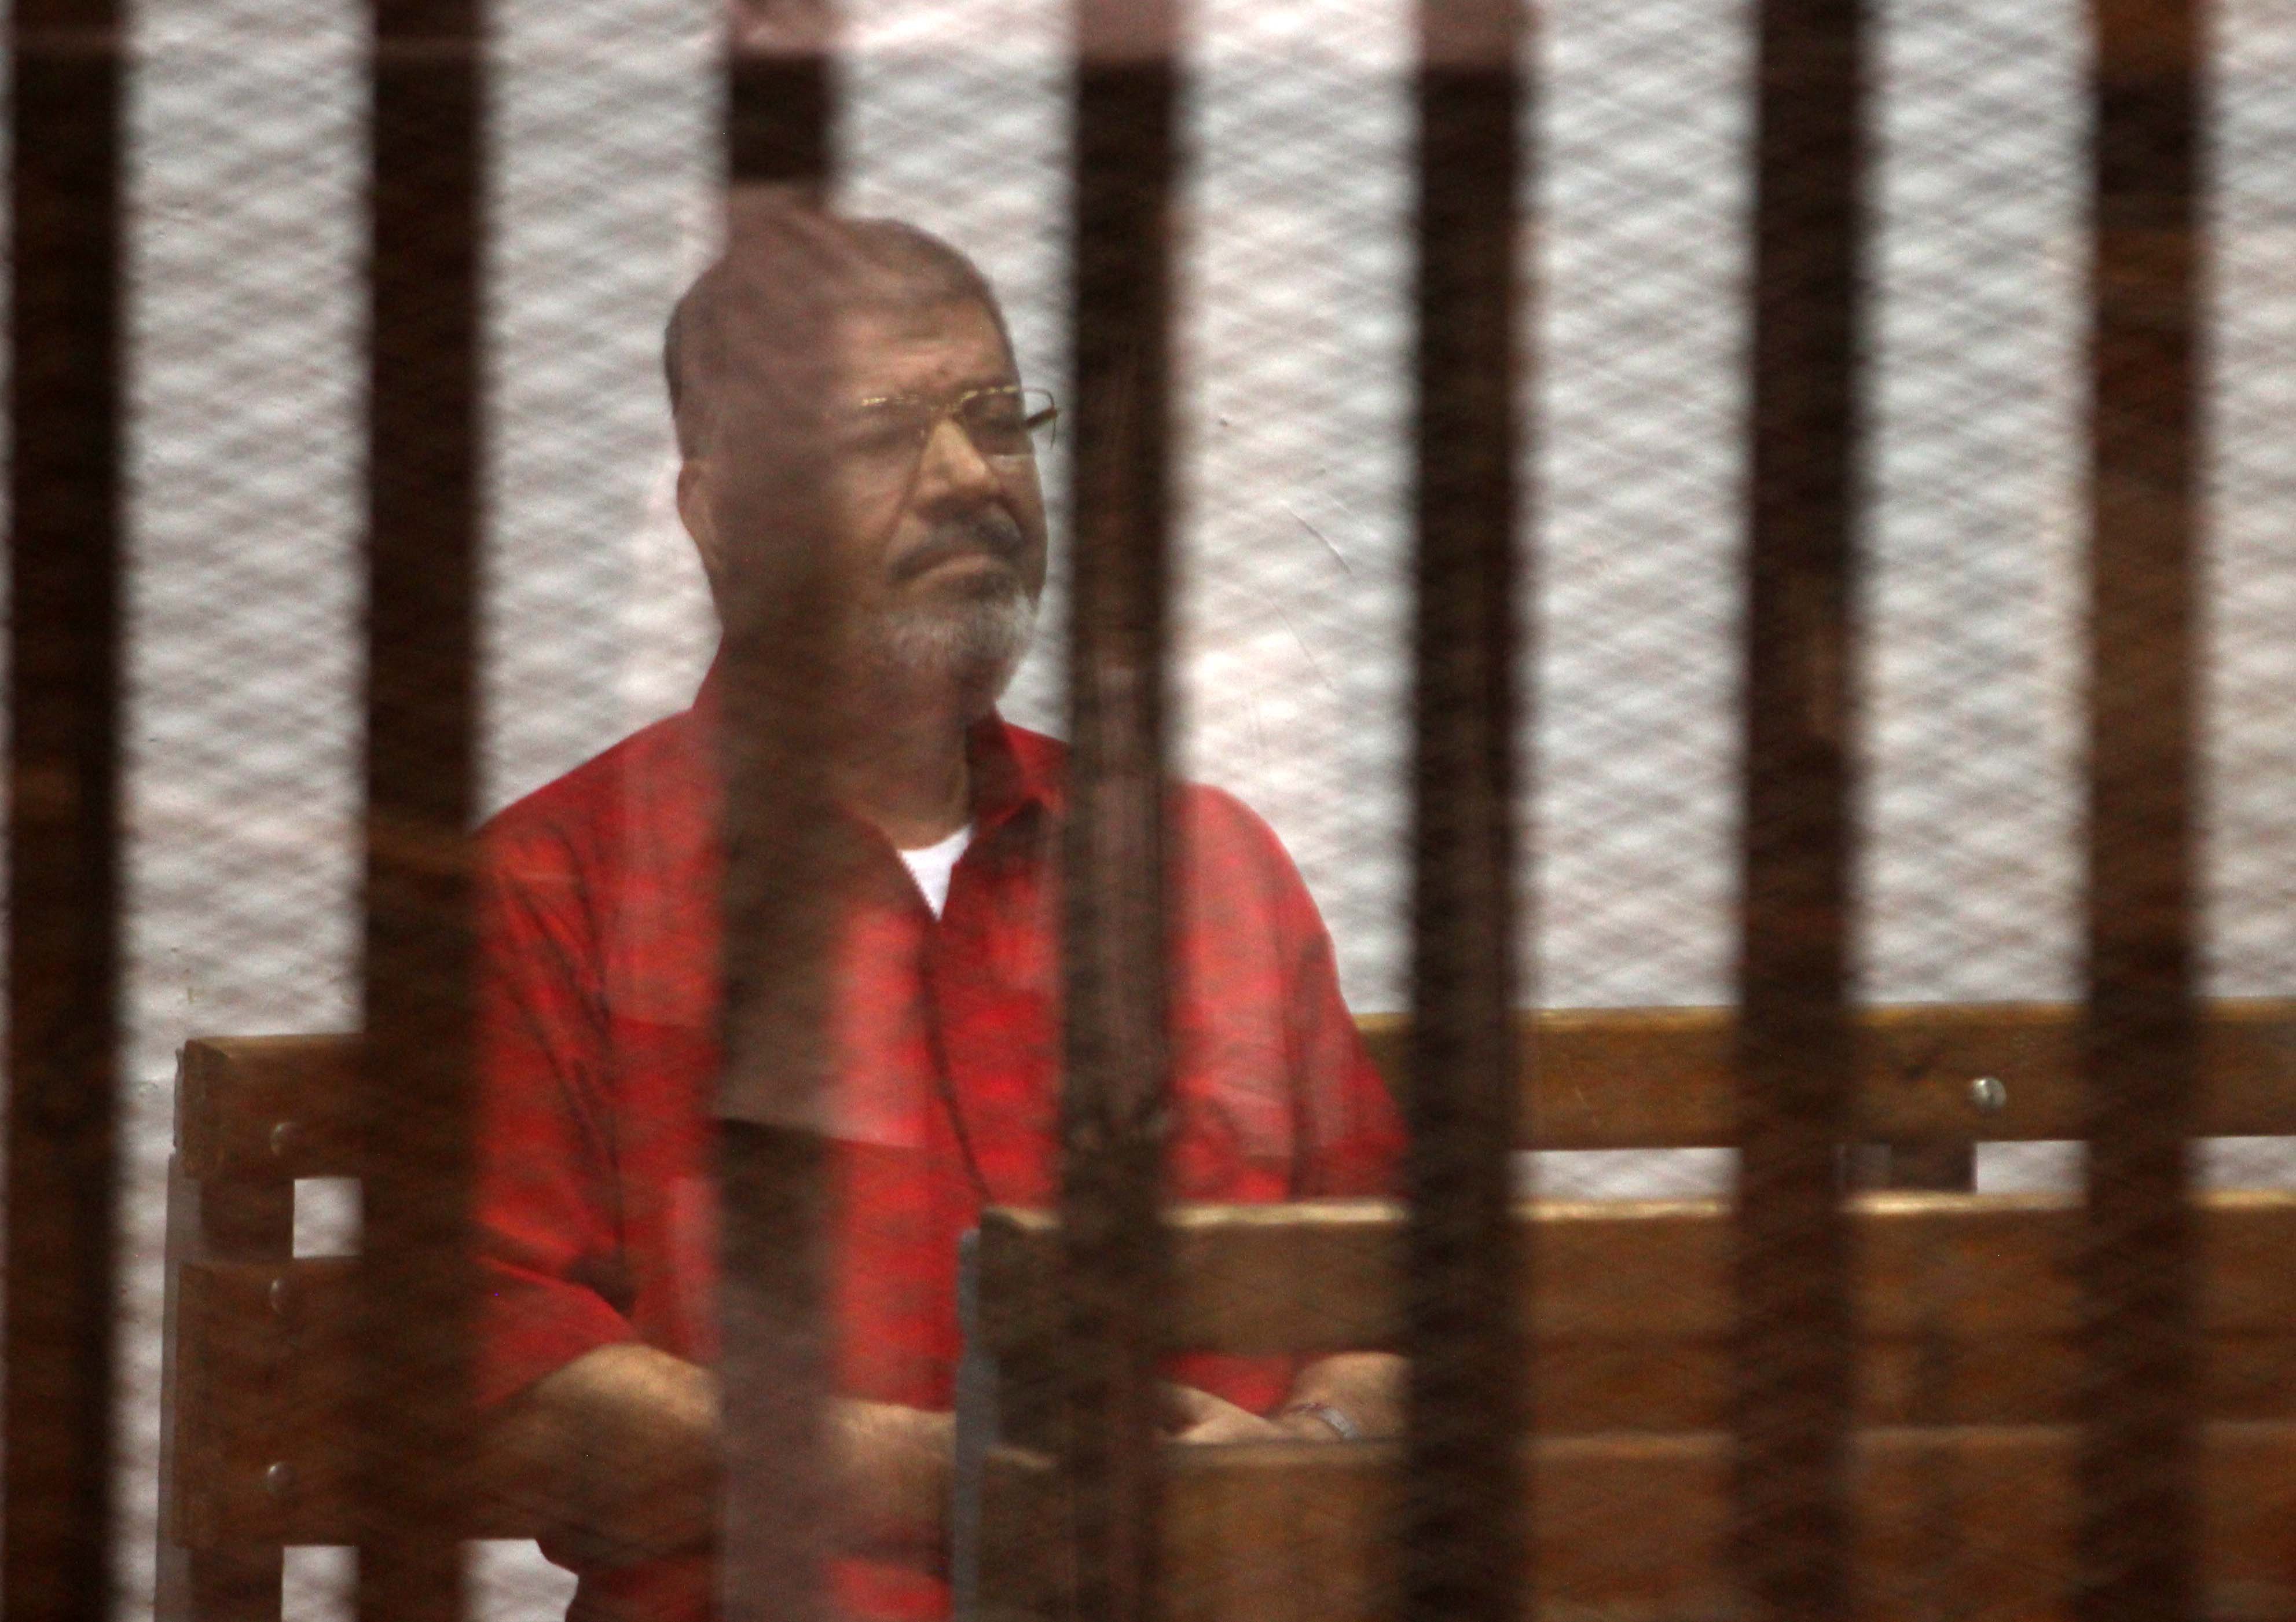 "مرسي" يخلع البدلة الحمراء ويرتدي الزرقاء بعد إلغاء إعدامه